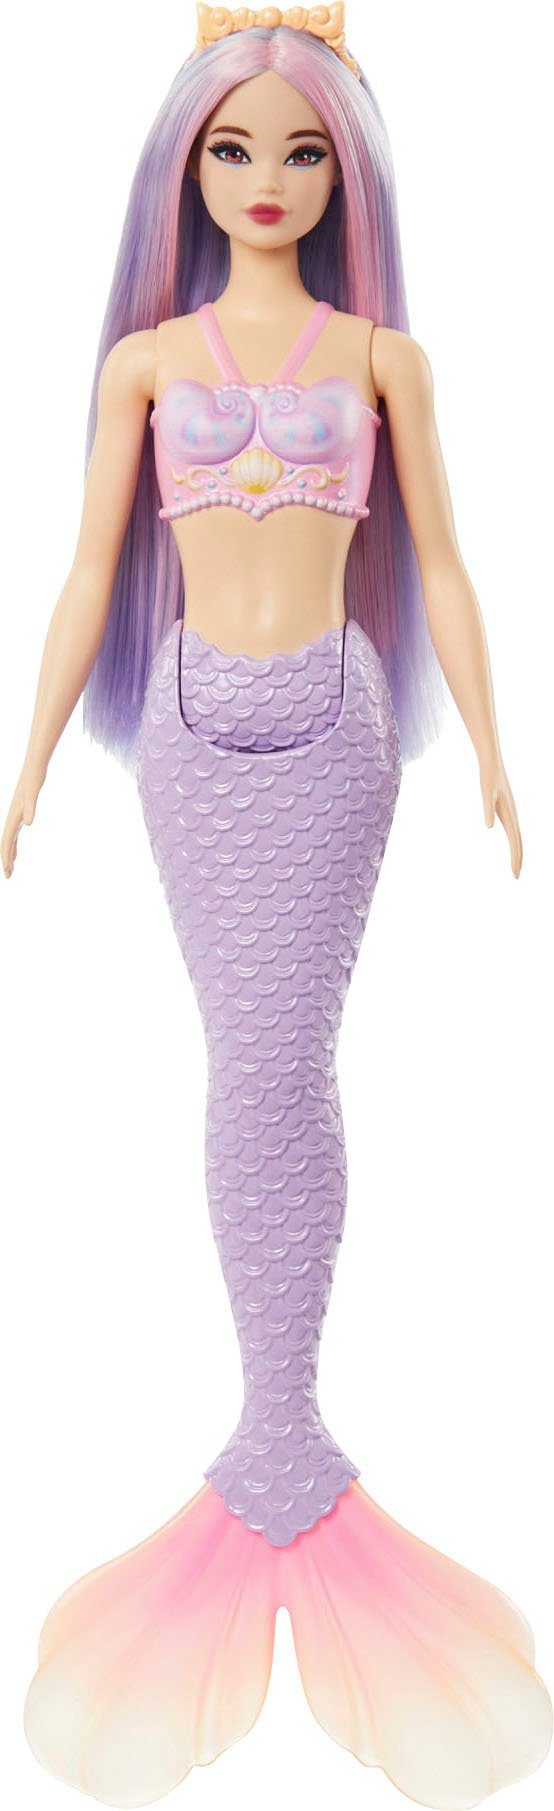 Meerjungfrau, mit Meerjungfrauenpuppe Haar lilafarbenem Barbie